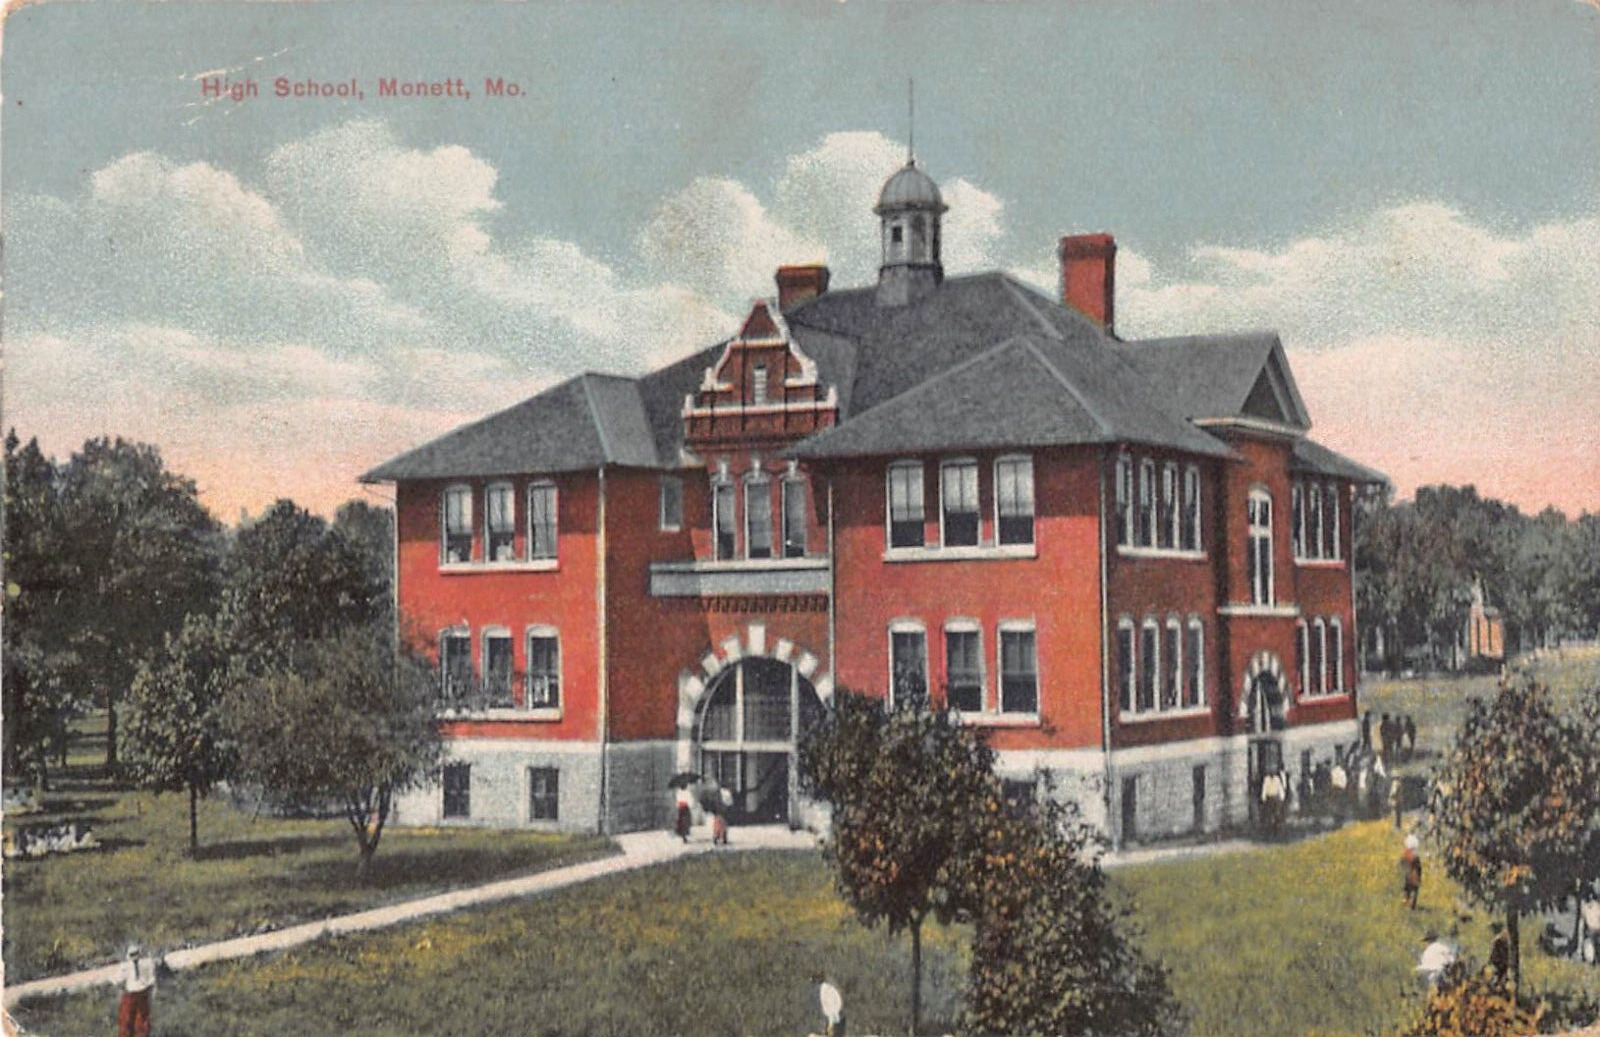 High School, Monett, Missouri - 1910 Postcard-D.B. Kingery Publisher, Monett, MO